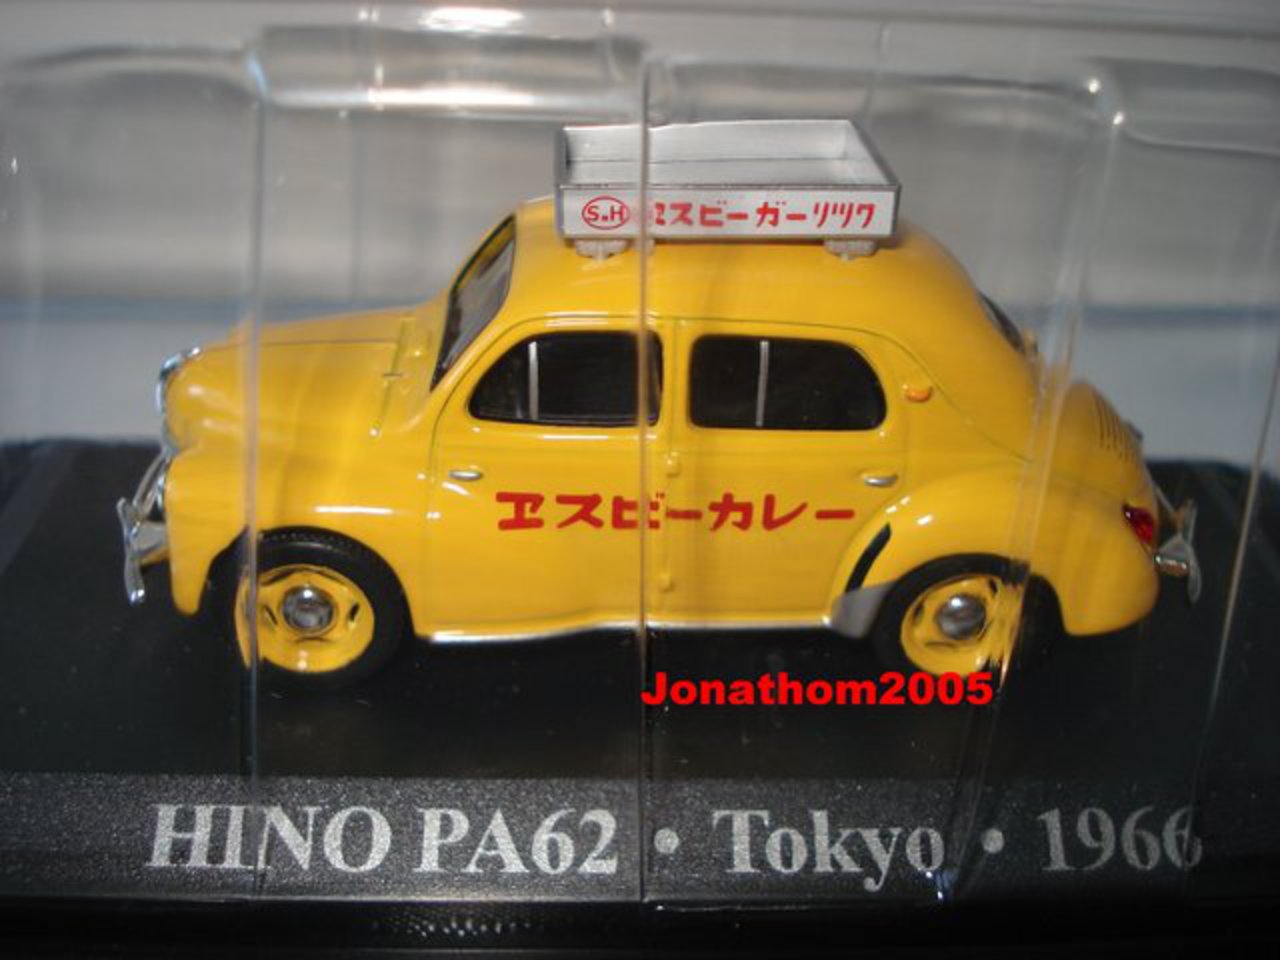 HINO PA62. "Cousine japonnaise" de la 4CV. Taxi Tokyo ( Japon ) 1966